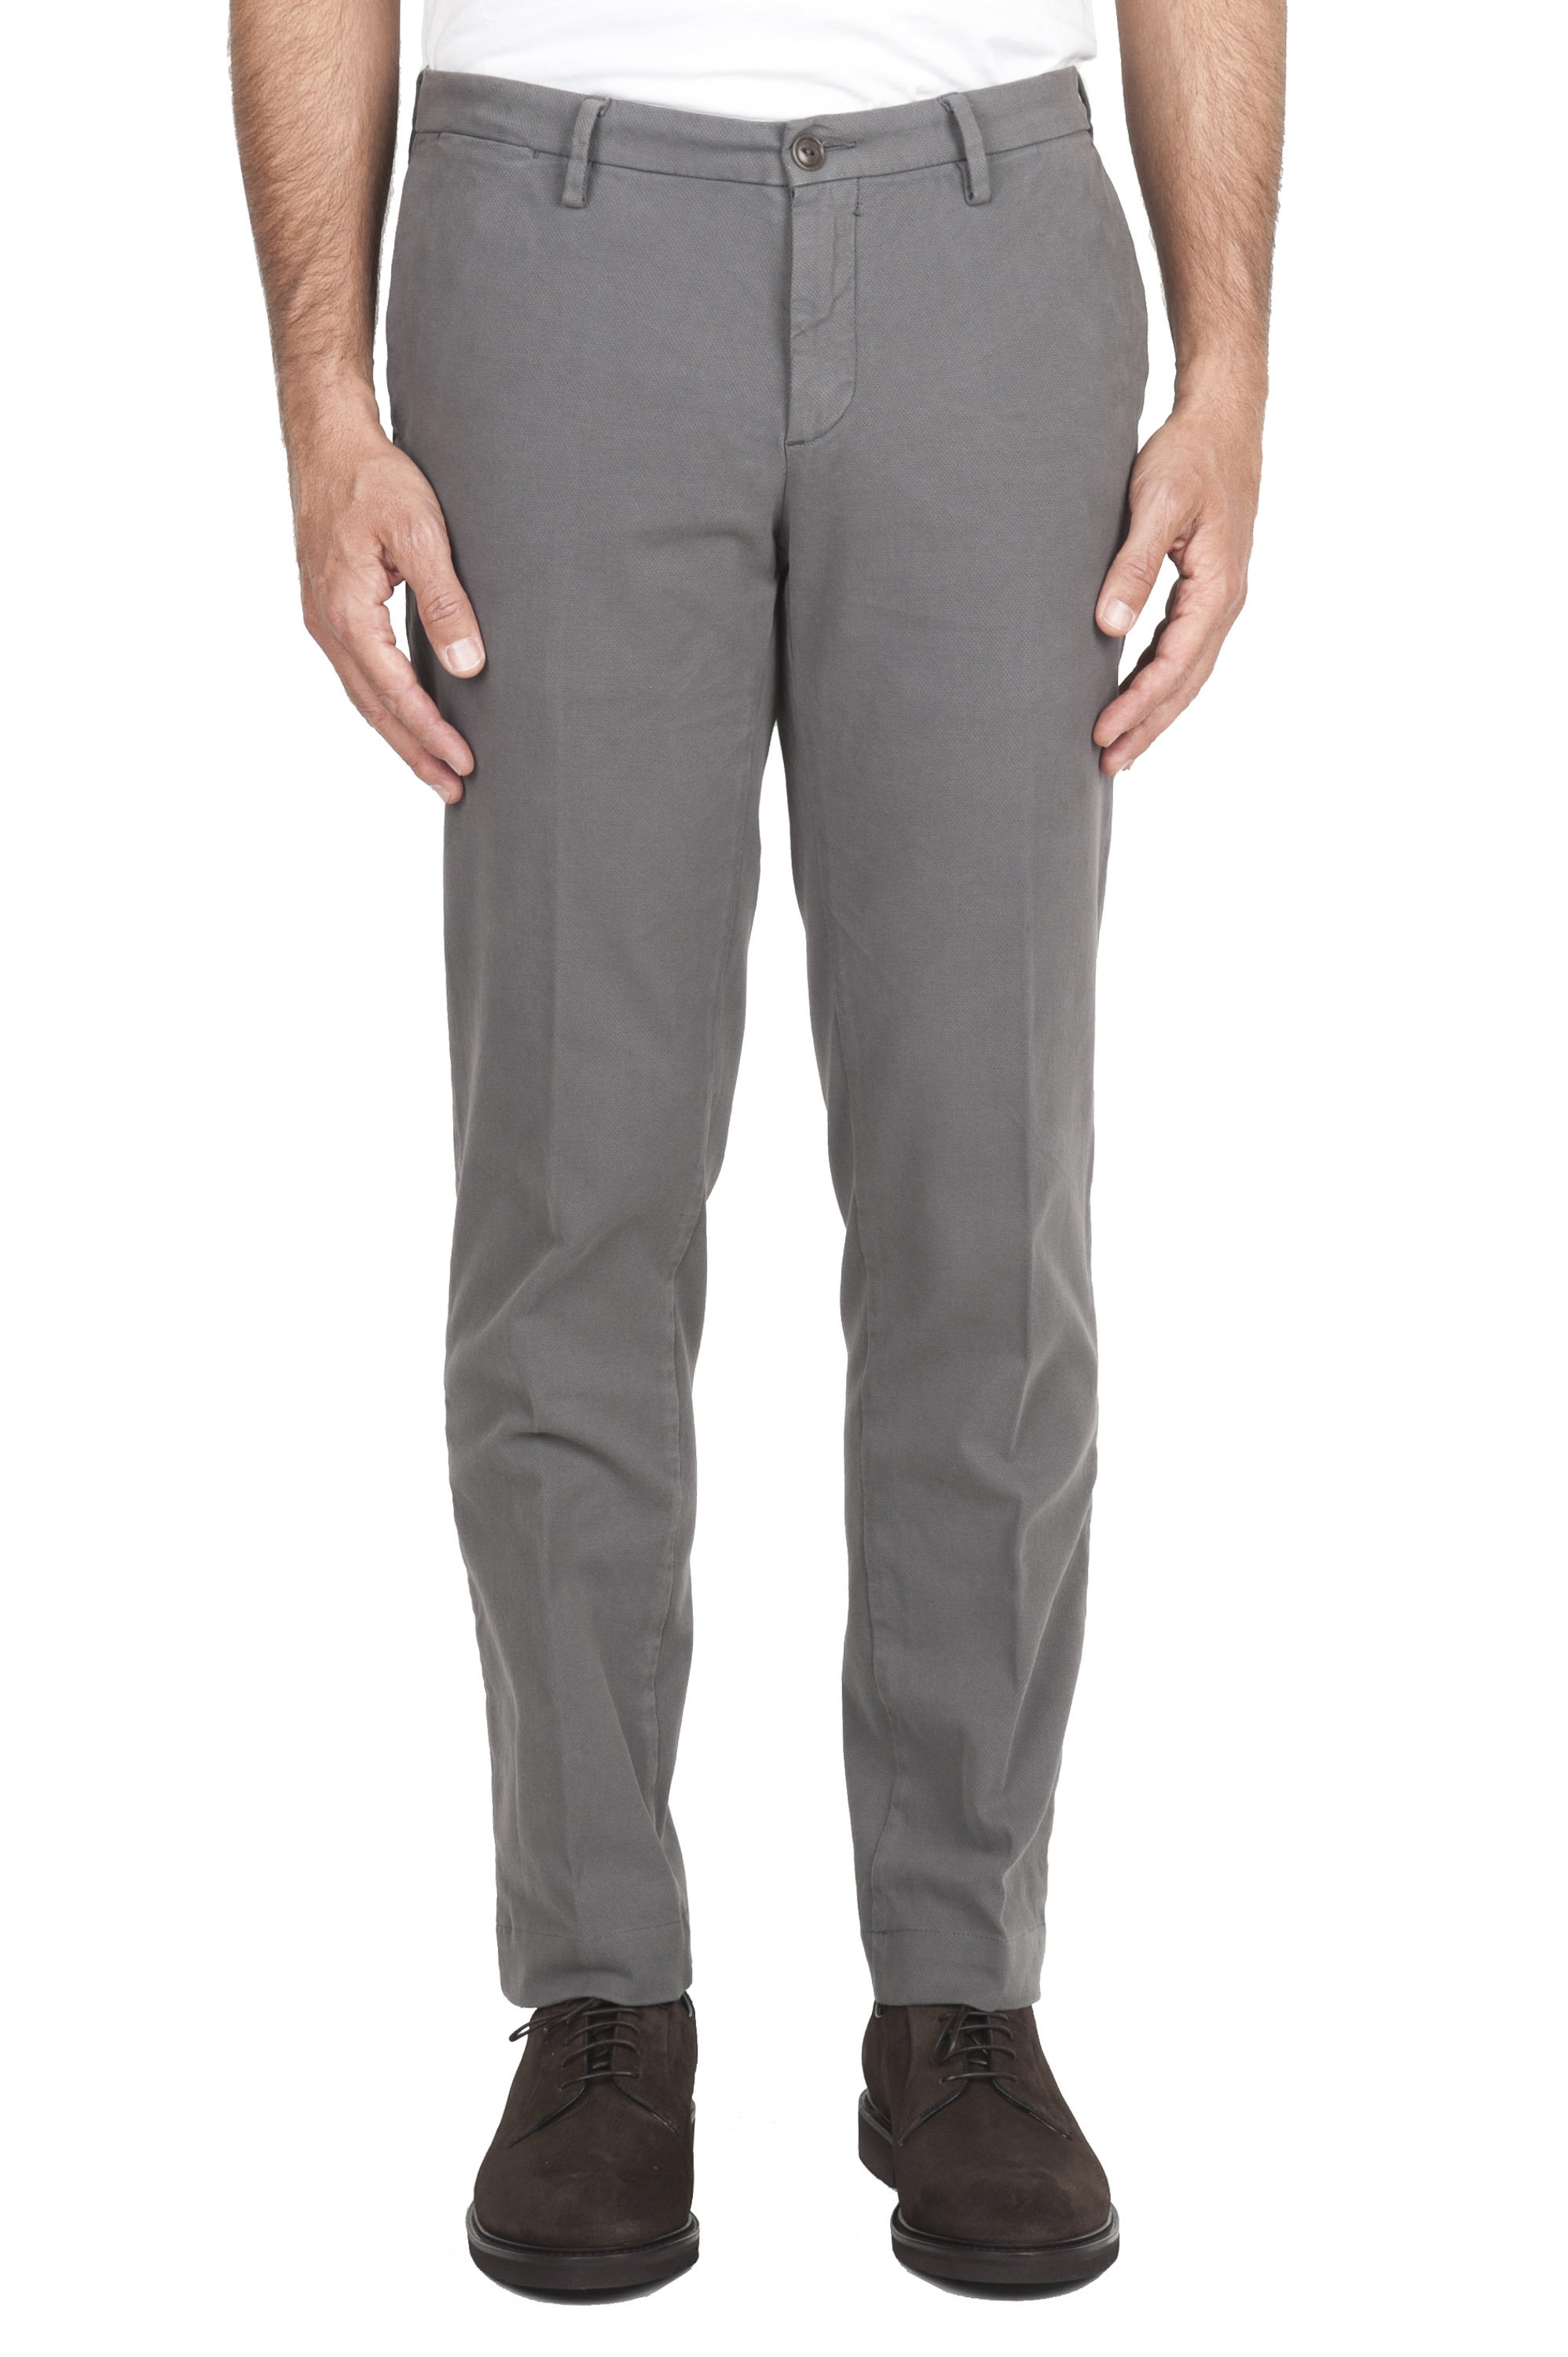 SBU 01543_19AW Pantaloni chino classici in cotone stretch grigio chiaro 01